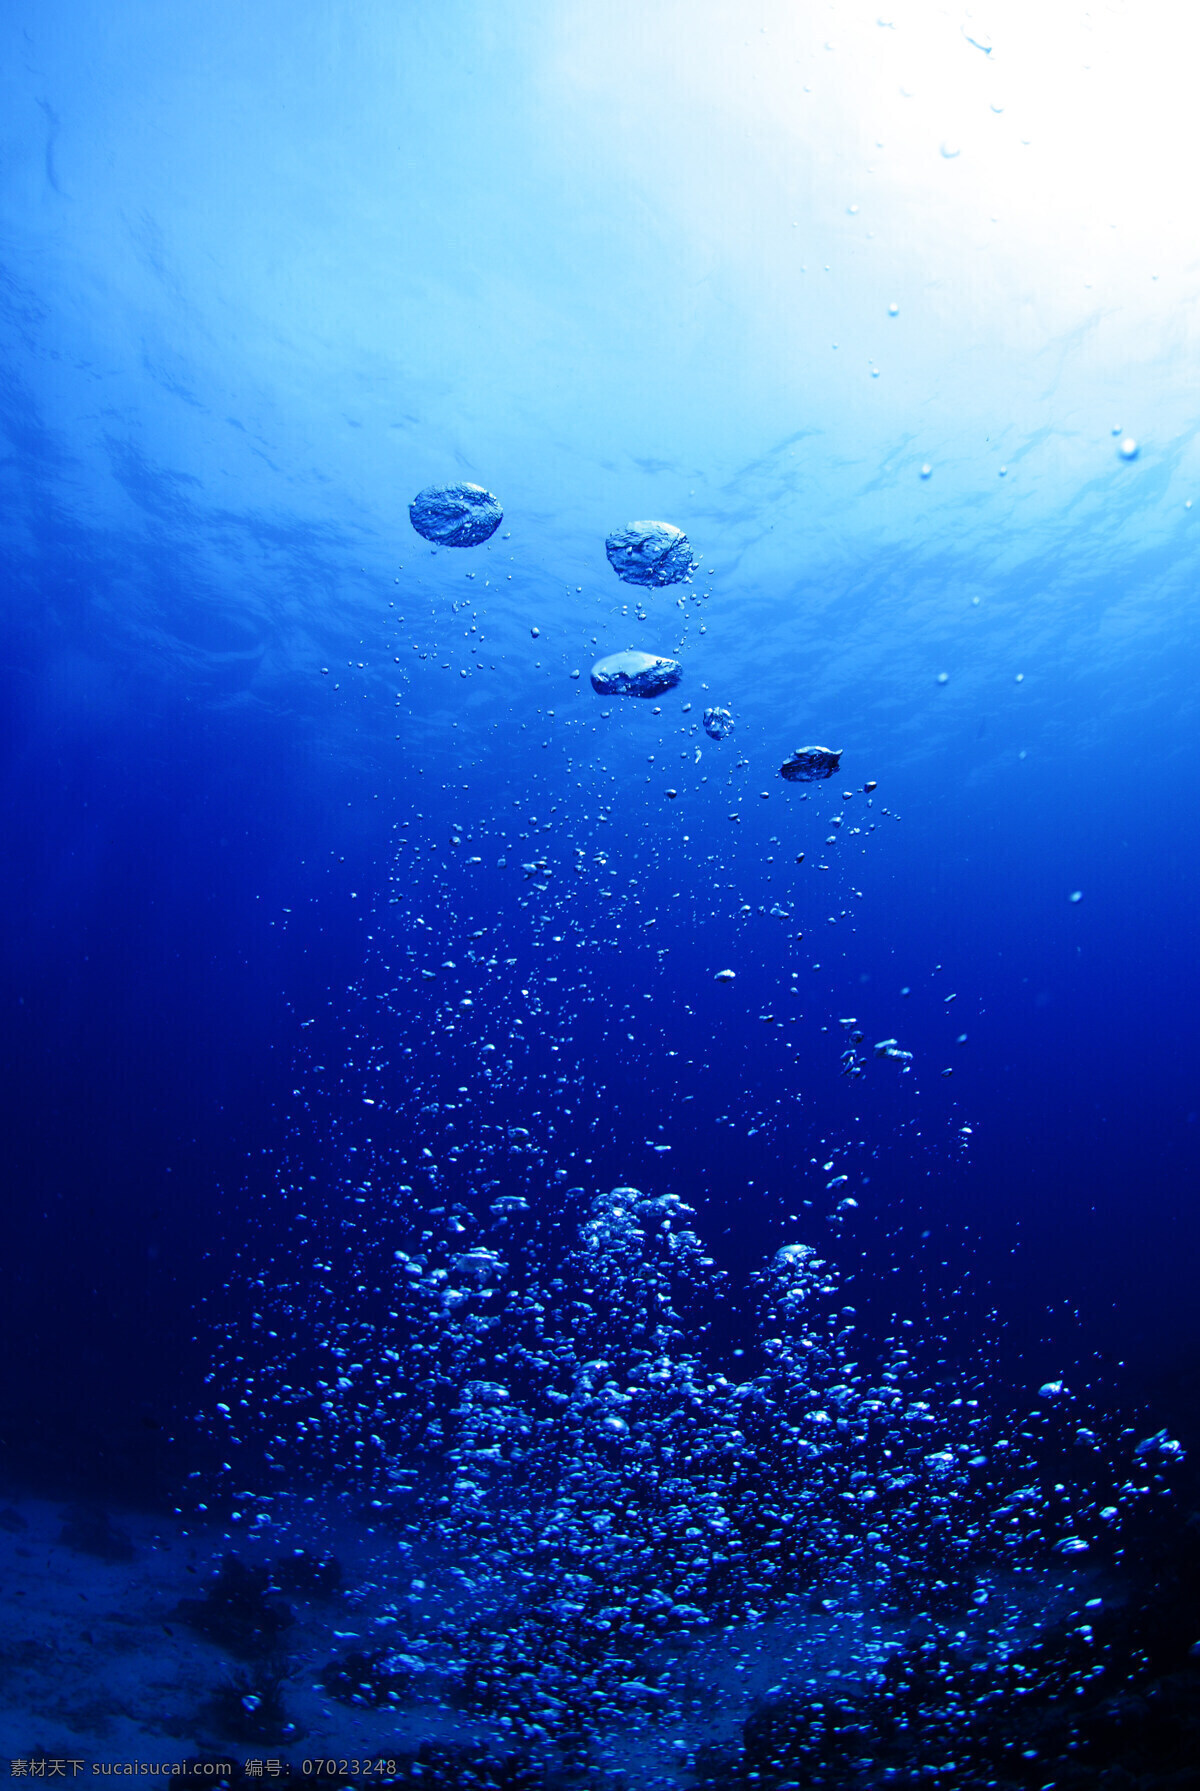 海底气泡 海底 气泡 琉球 潜水 湛蓝 清澈 自然景观 自然风景 摄影图库